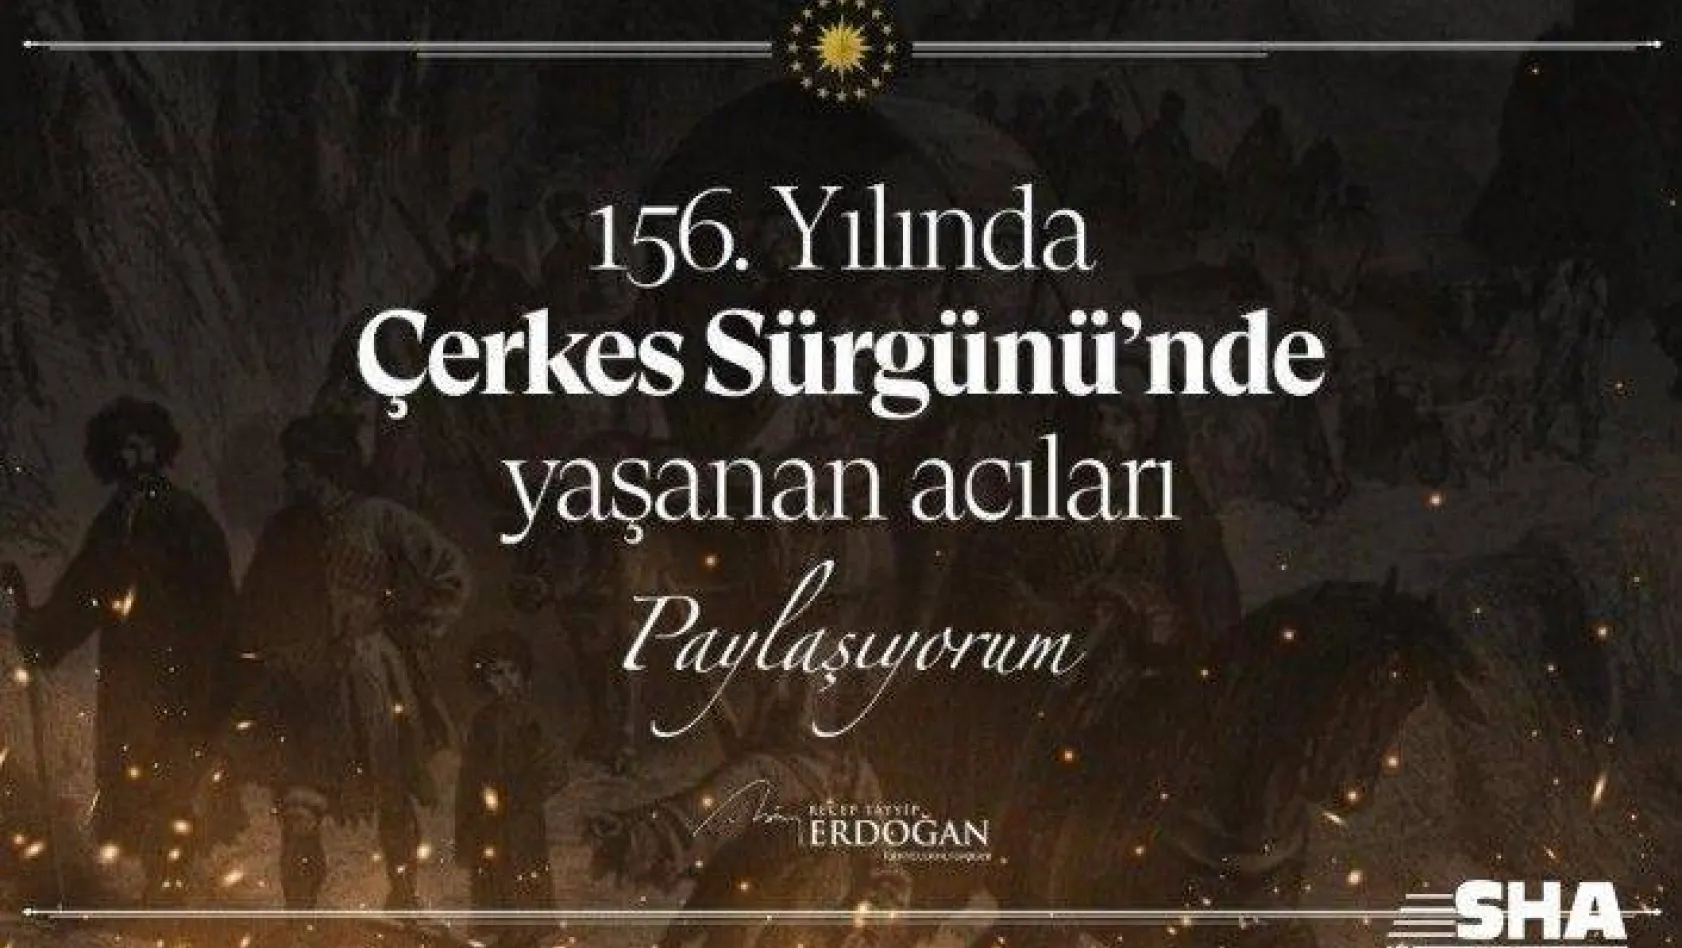 Cumhurbaşkanı Erdoğan'dan Çerkes sürgününün 156'ncı yılına ilişkin paylaşım